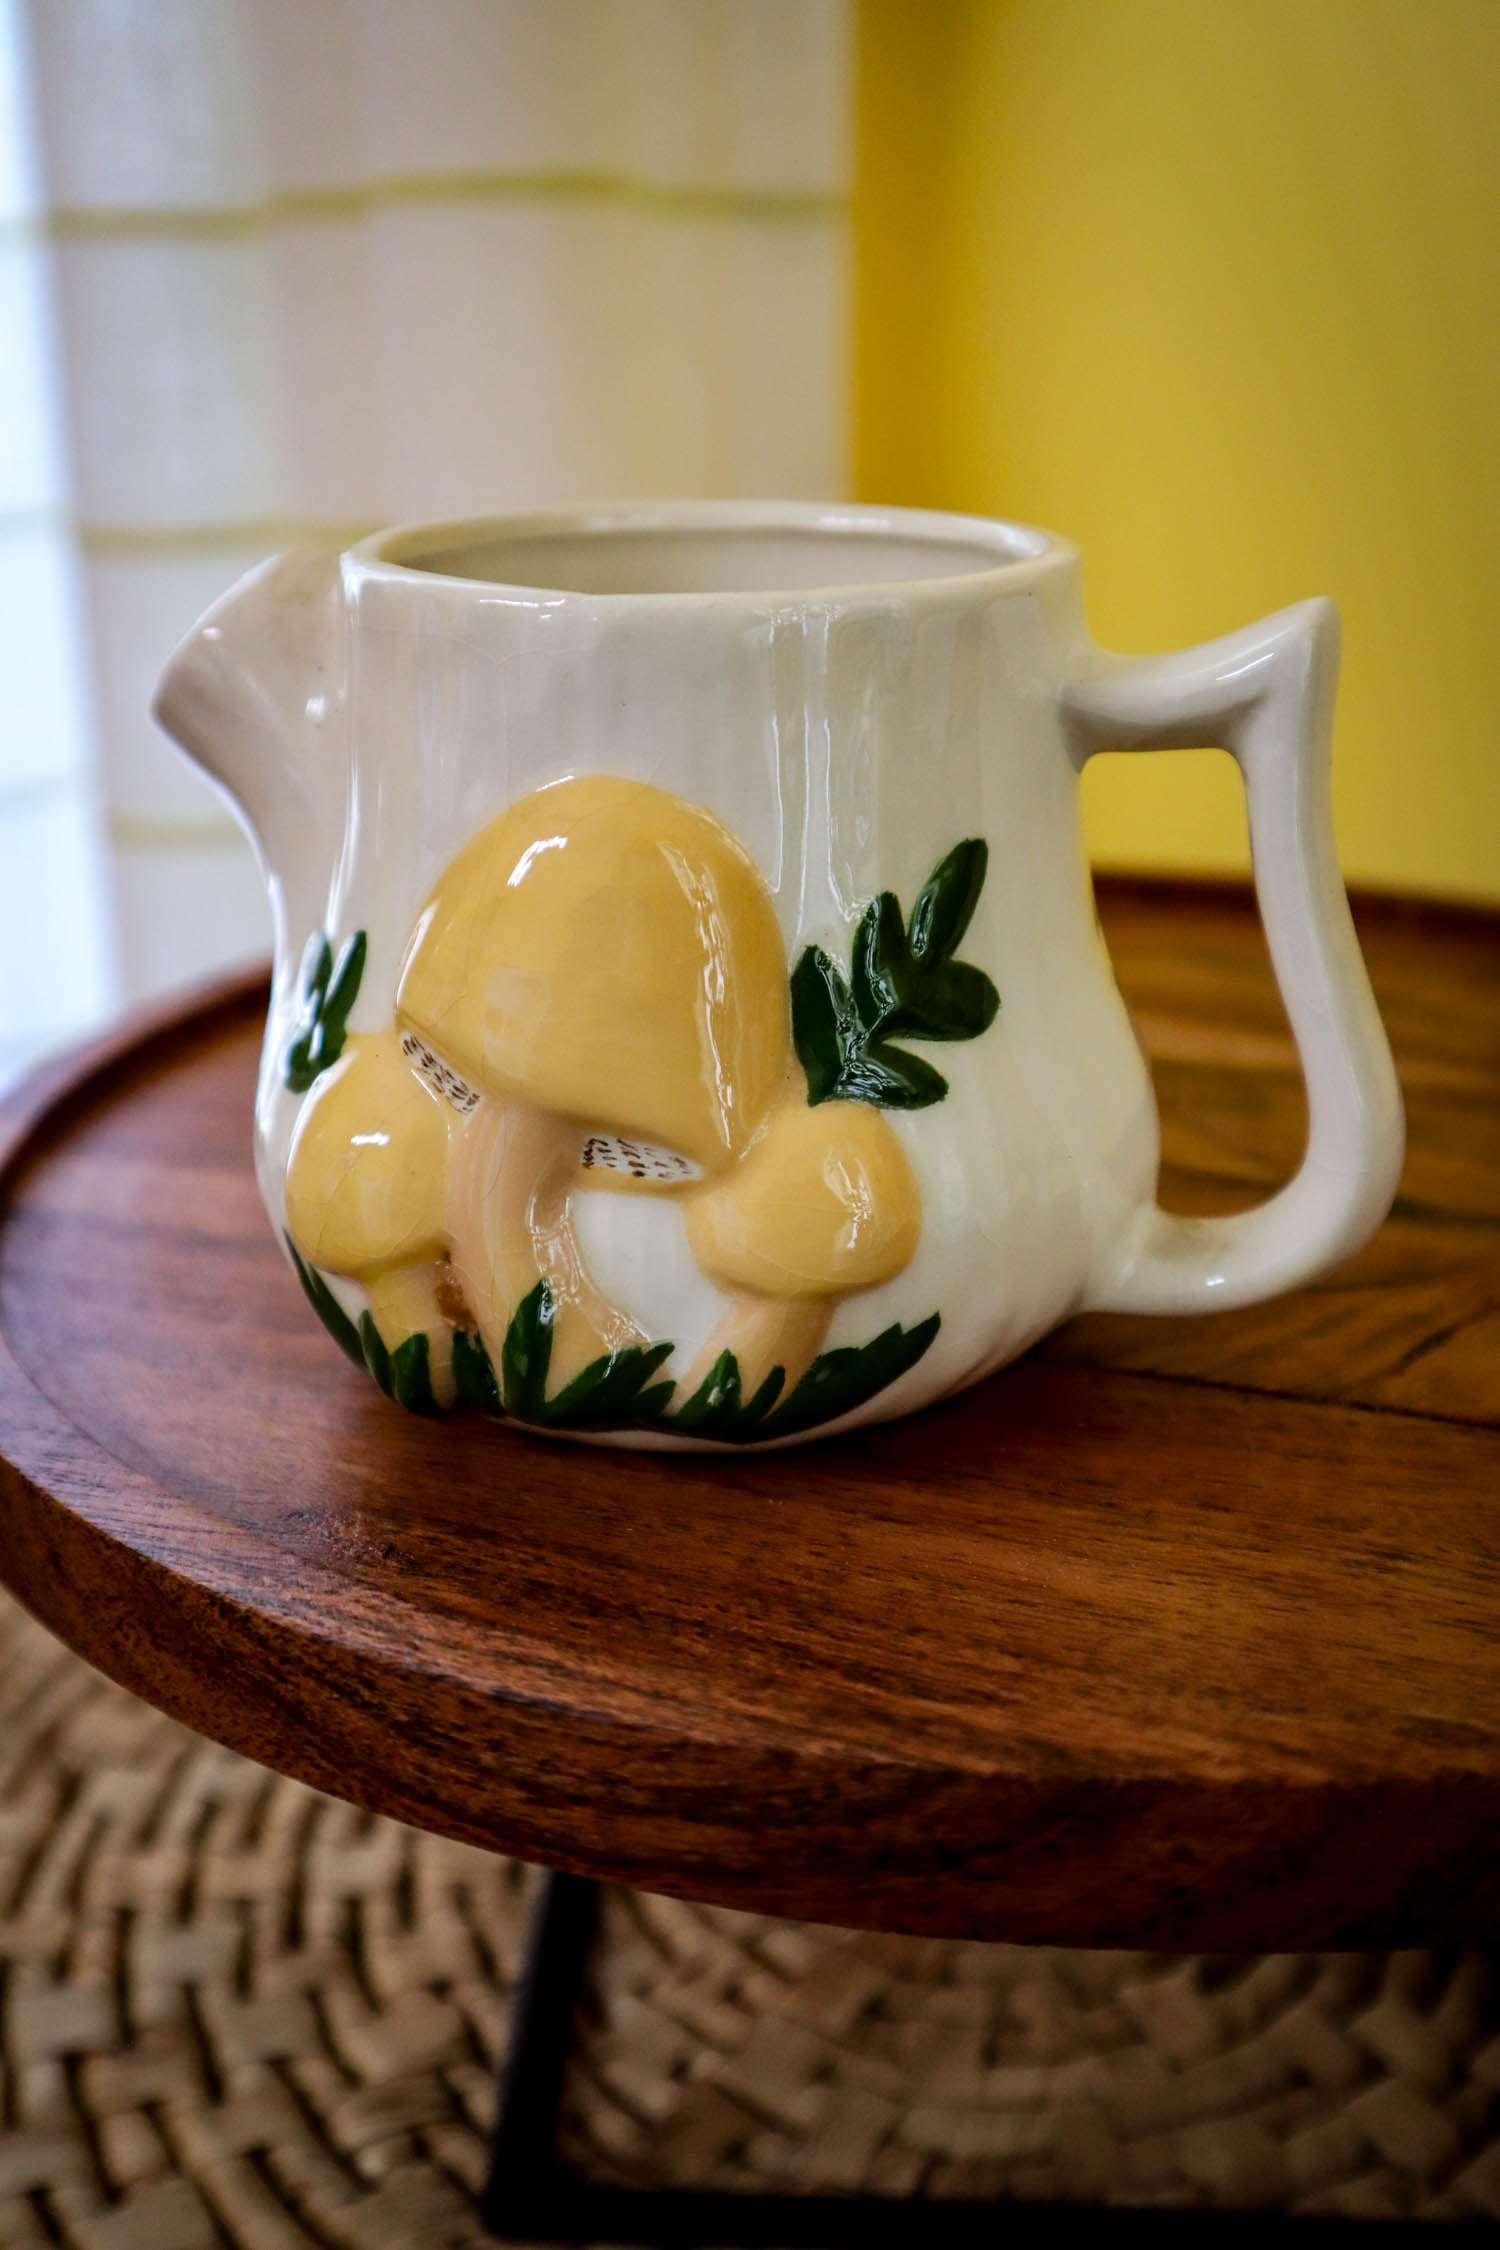 http://justdandies.co/cdn/shop/files/2875-arnels-pottery-mushroom-creamer-tea-pot-vase-5.jpg?v=1700084172